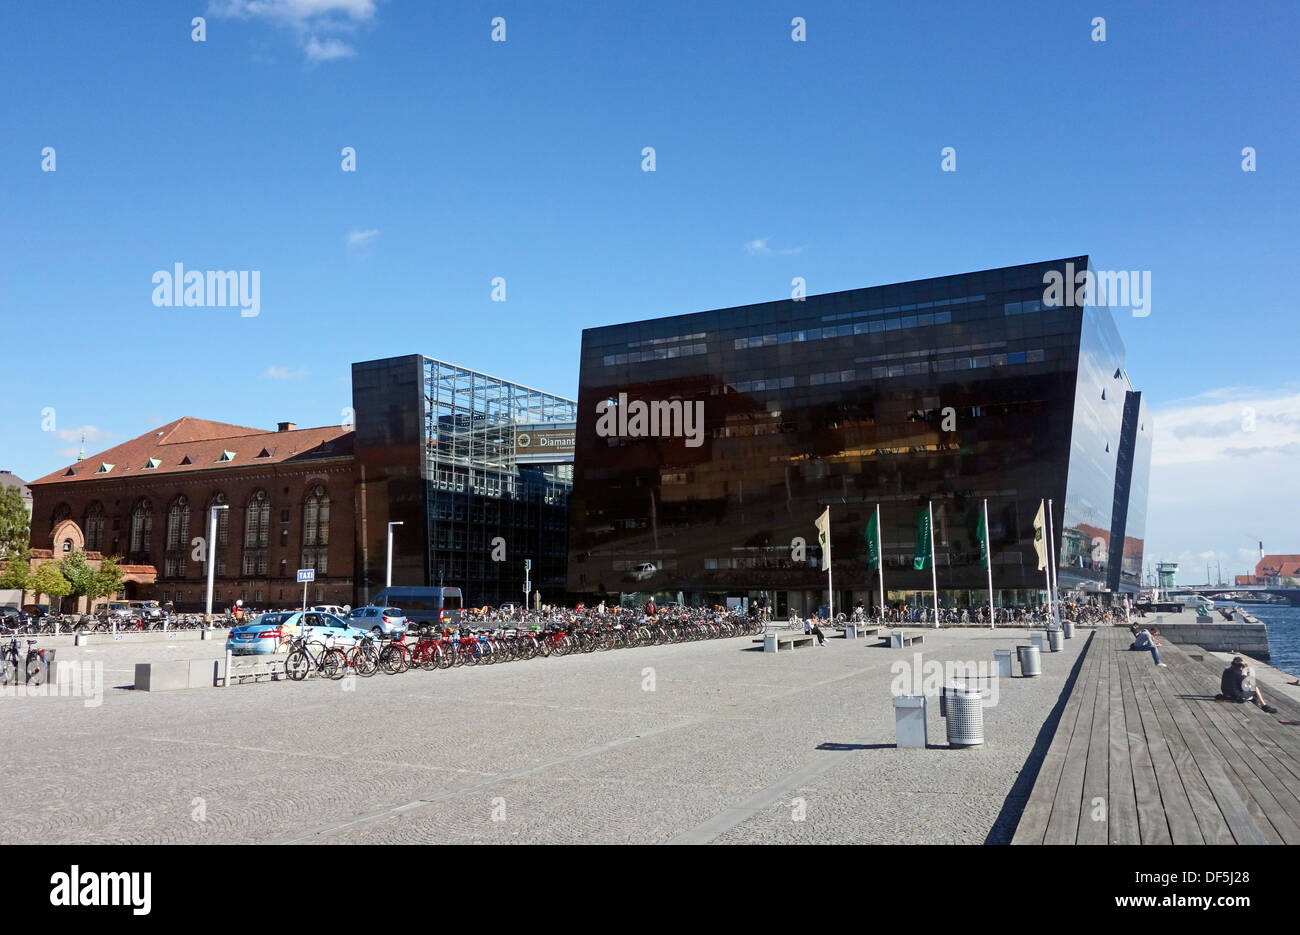 In der Black Diamond spektakulär befindet sich an der Uferpromenade in Kopenhagen bezeichnet ist der königlichen Bibliothek untergebracht. Stockfoto